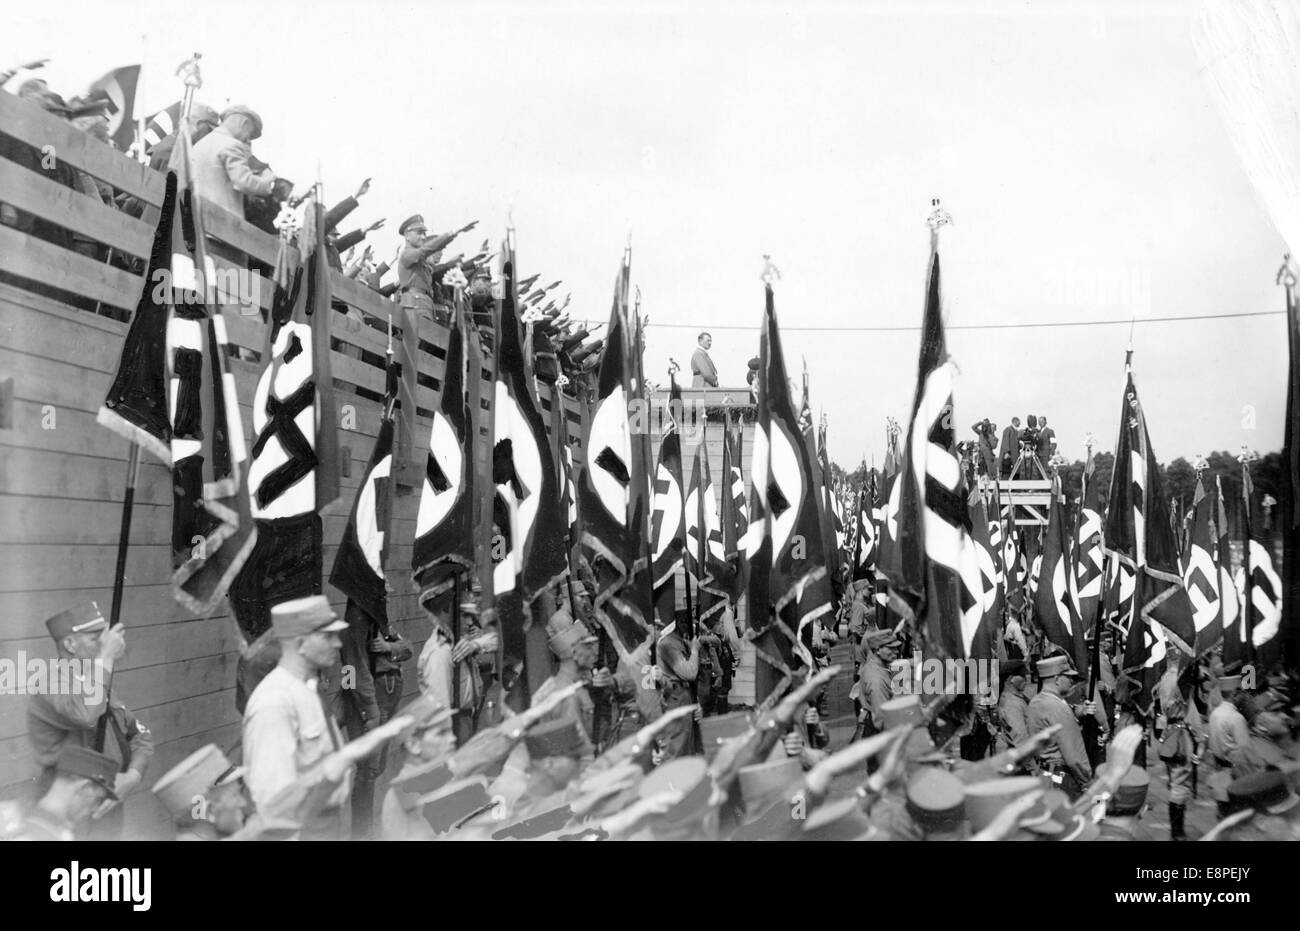 Rally di Norimberga 1933 a Norimberga, Germania - formazione dei membri della SA (Sturmabteilung) al raduno nazista, al centro della palma del sapeaker: Adolf Hitler. (Difetti di qualità dovuti alla copia storica dell'immagine) Fotoarchiv für Zeitgeschichtee - NESSUN SERVIZIO DI CABLAGGIO – Foto Stock